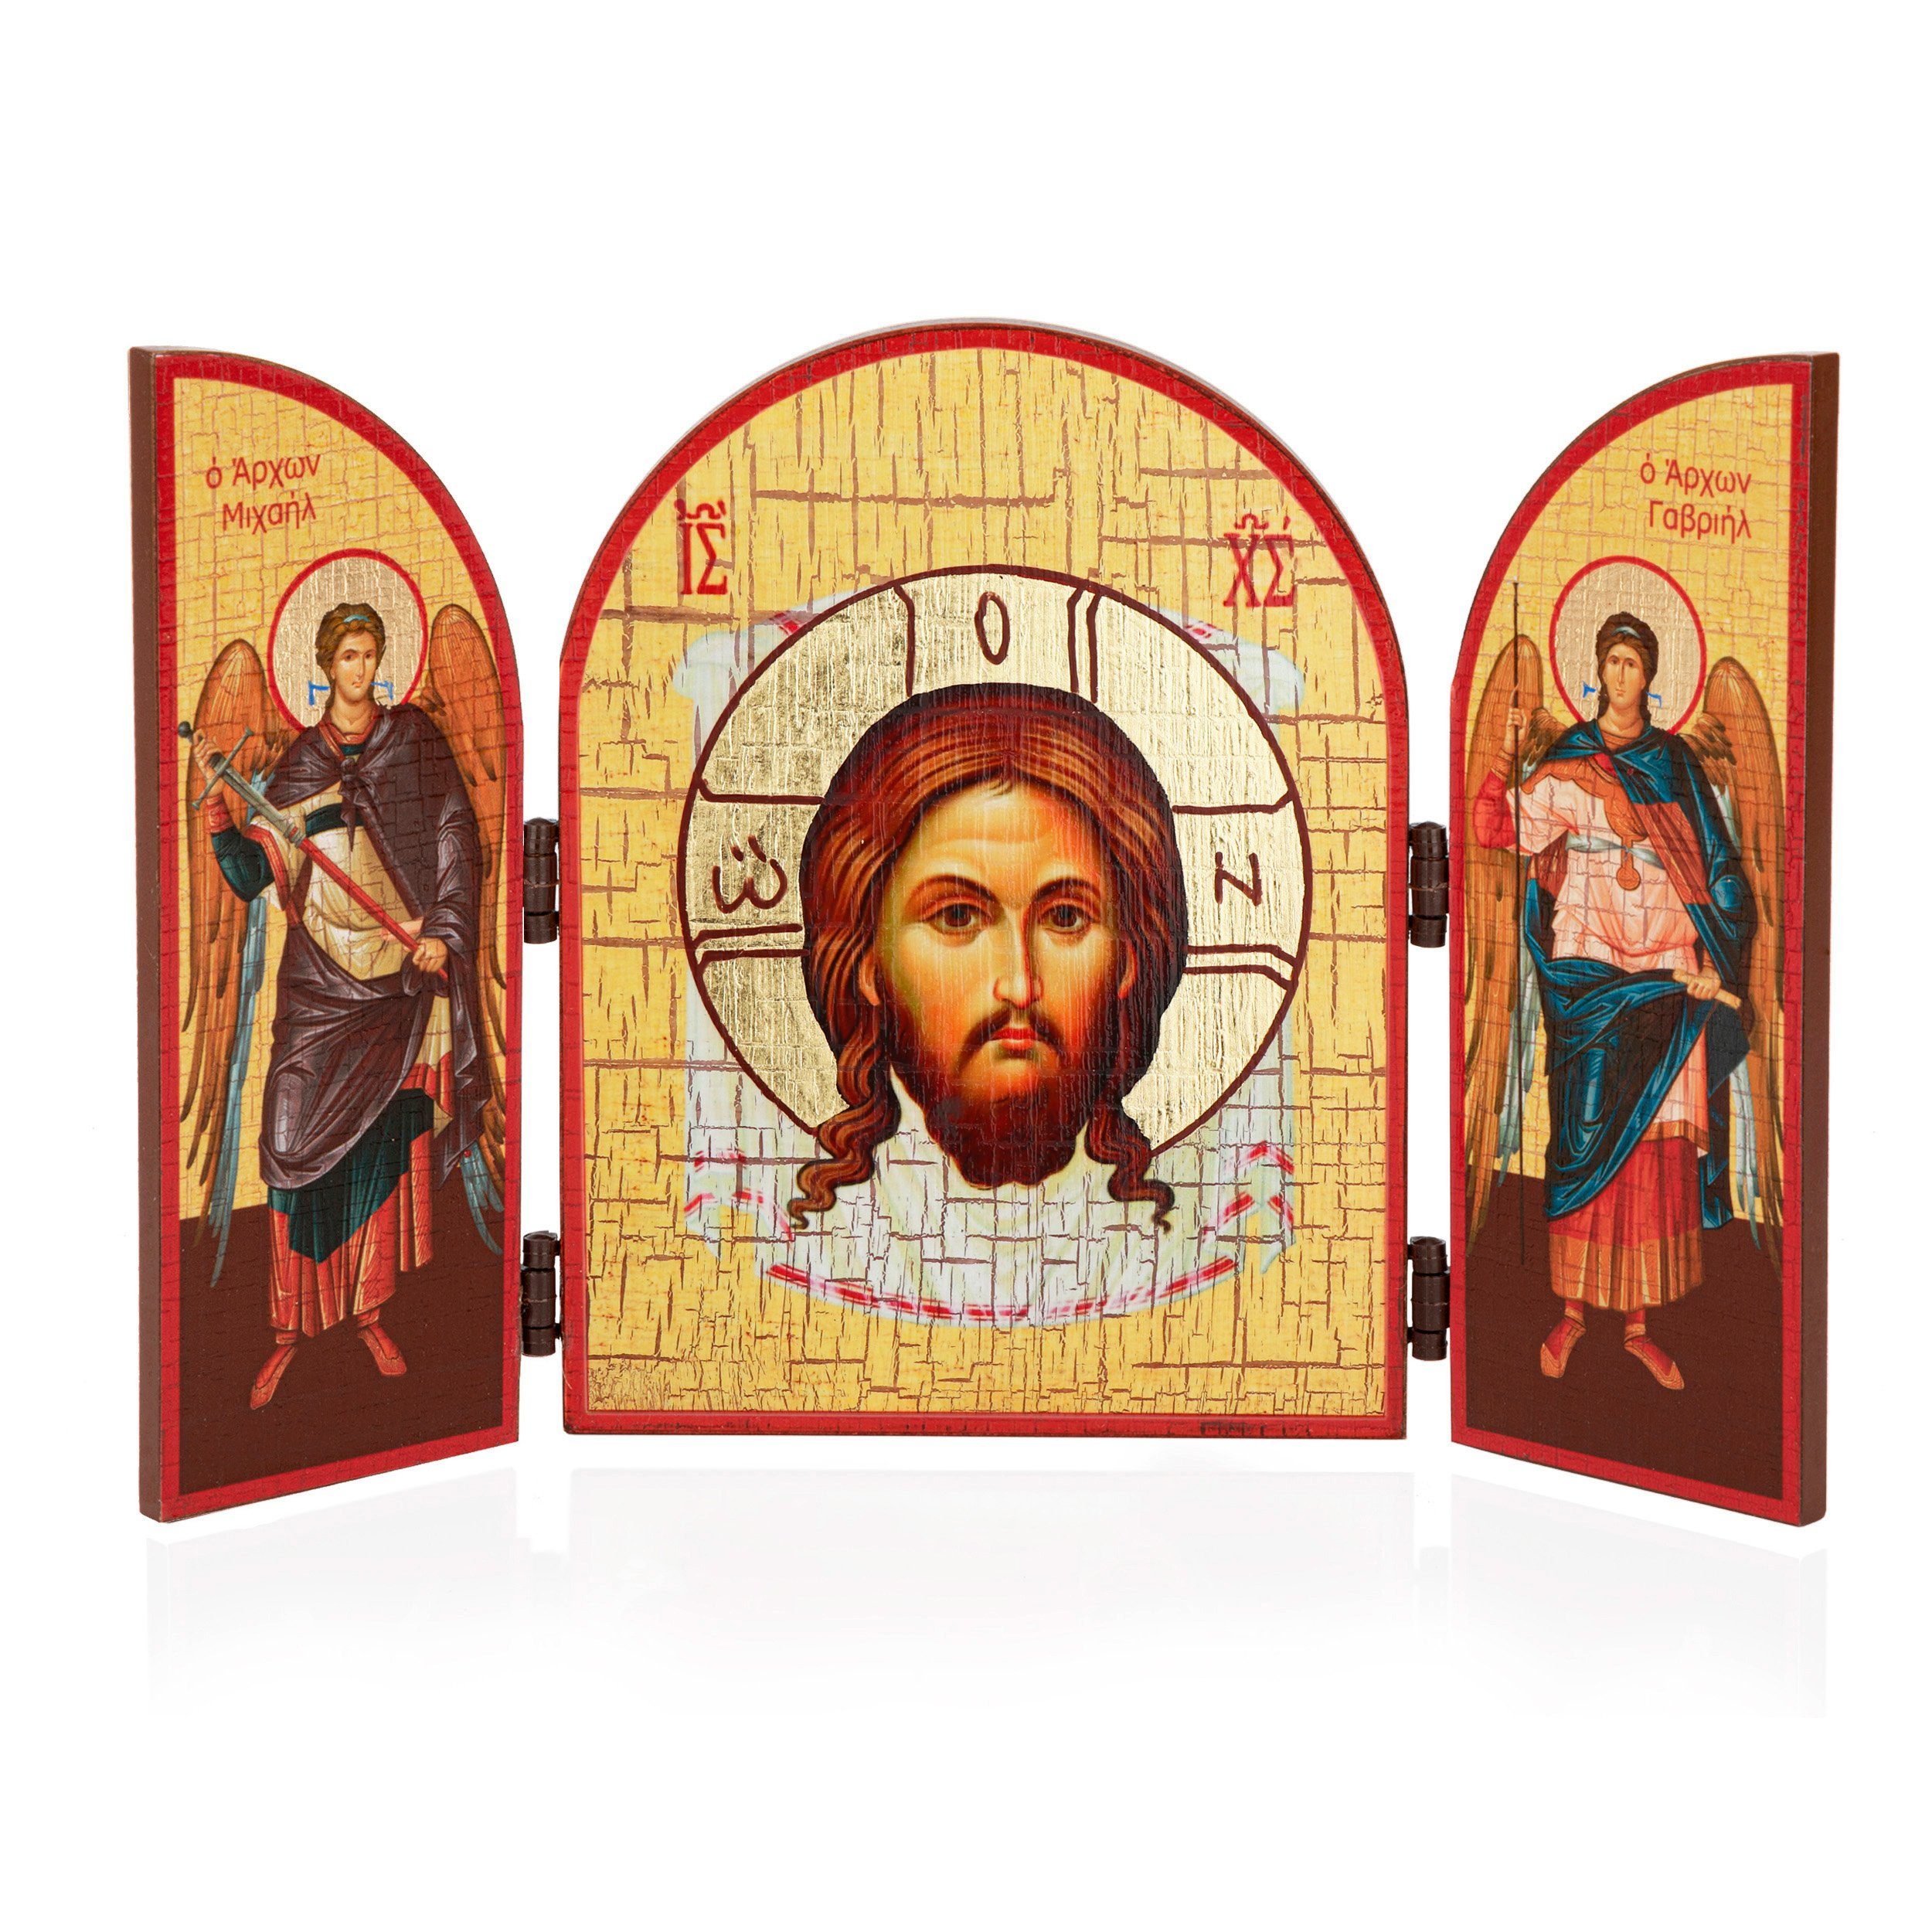 NKlaus Bild Jesus Acheiropoieton Ikone Triptychon Holz 25x16cm Christlich 13819, Religion